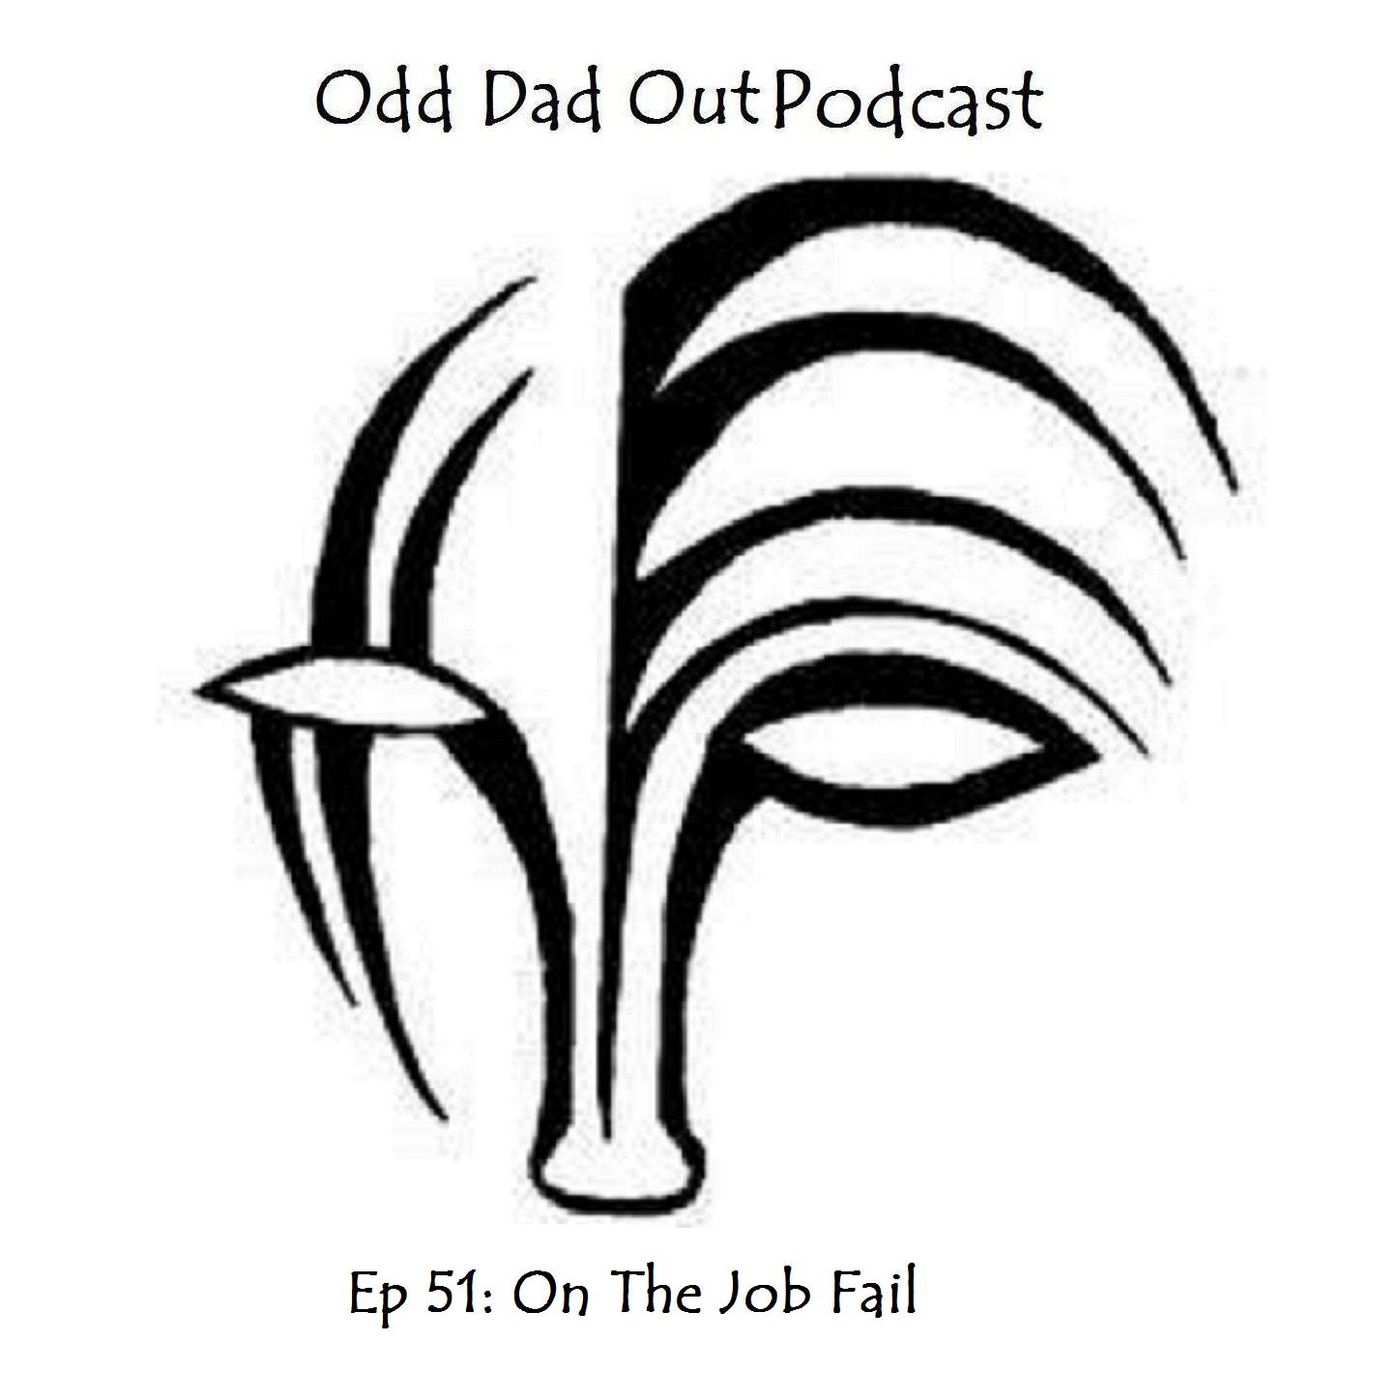 ODO 51: On The Job Fail